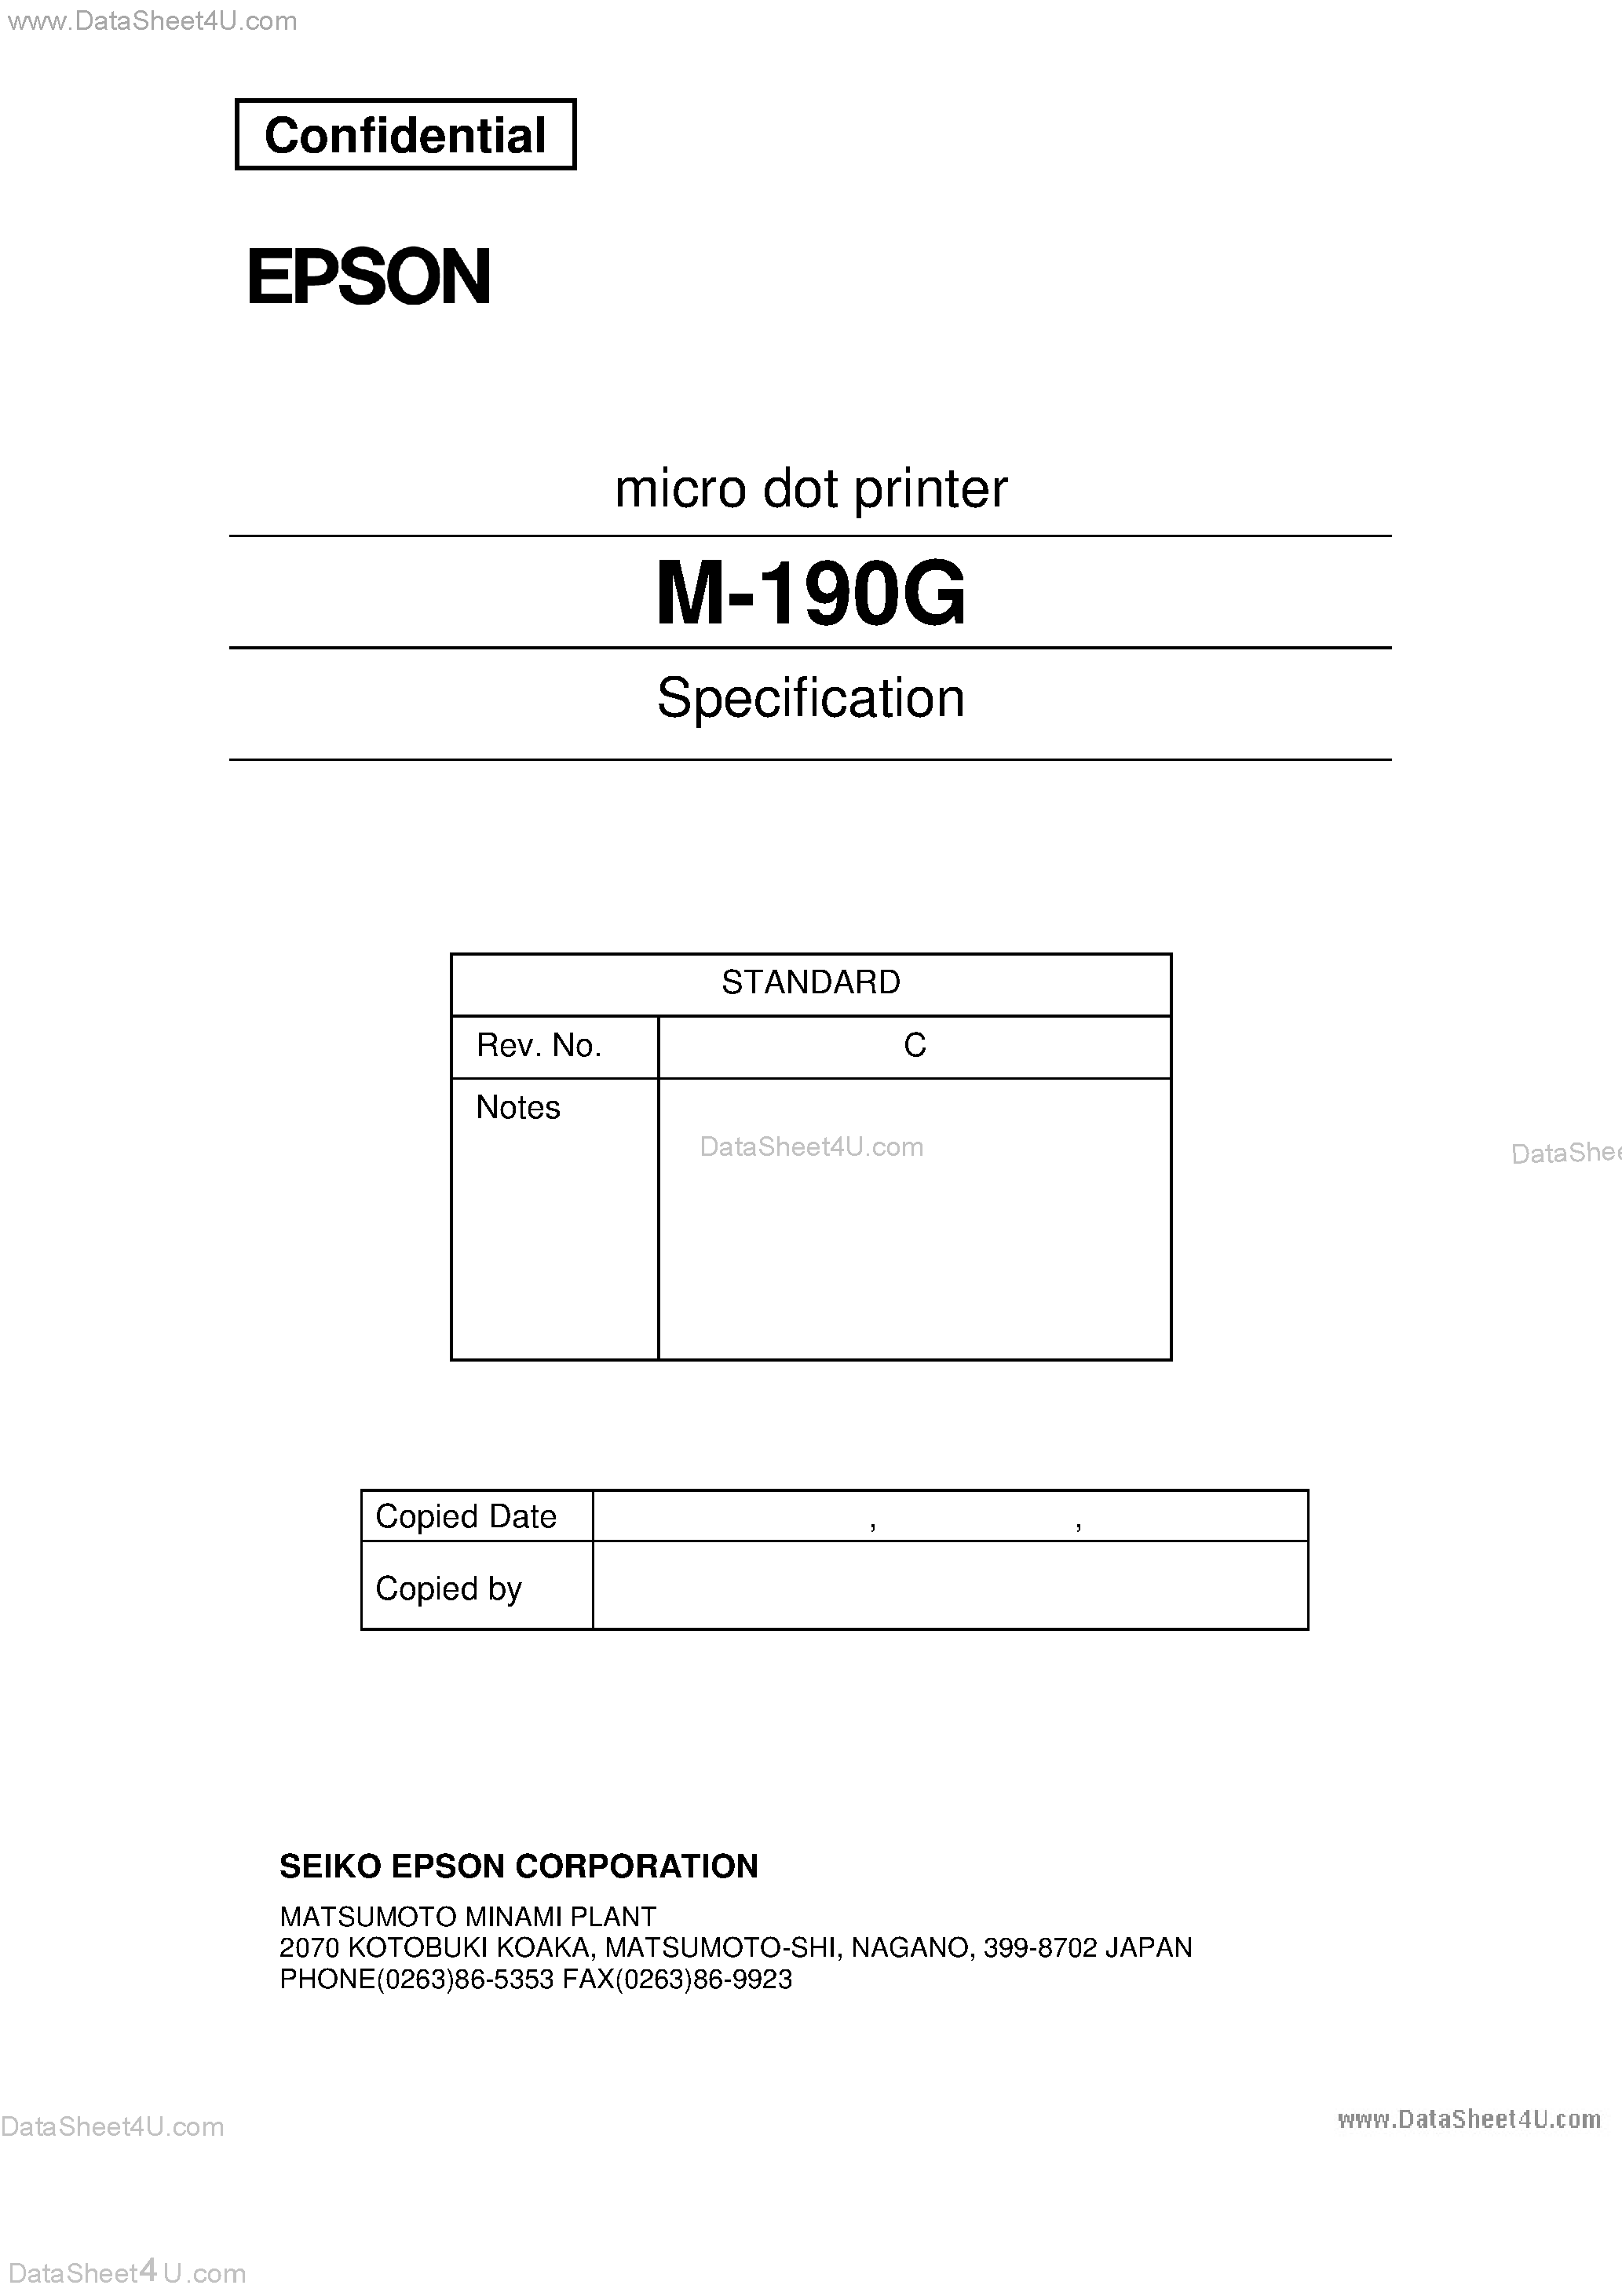 Даташит M-190G - Micro DOT Printer страница 1